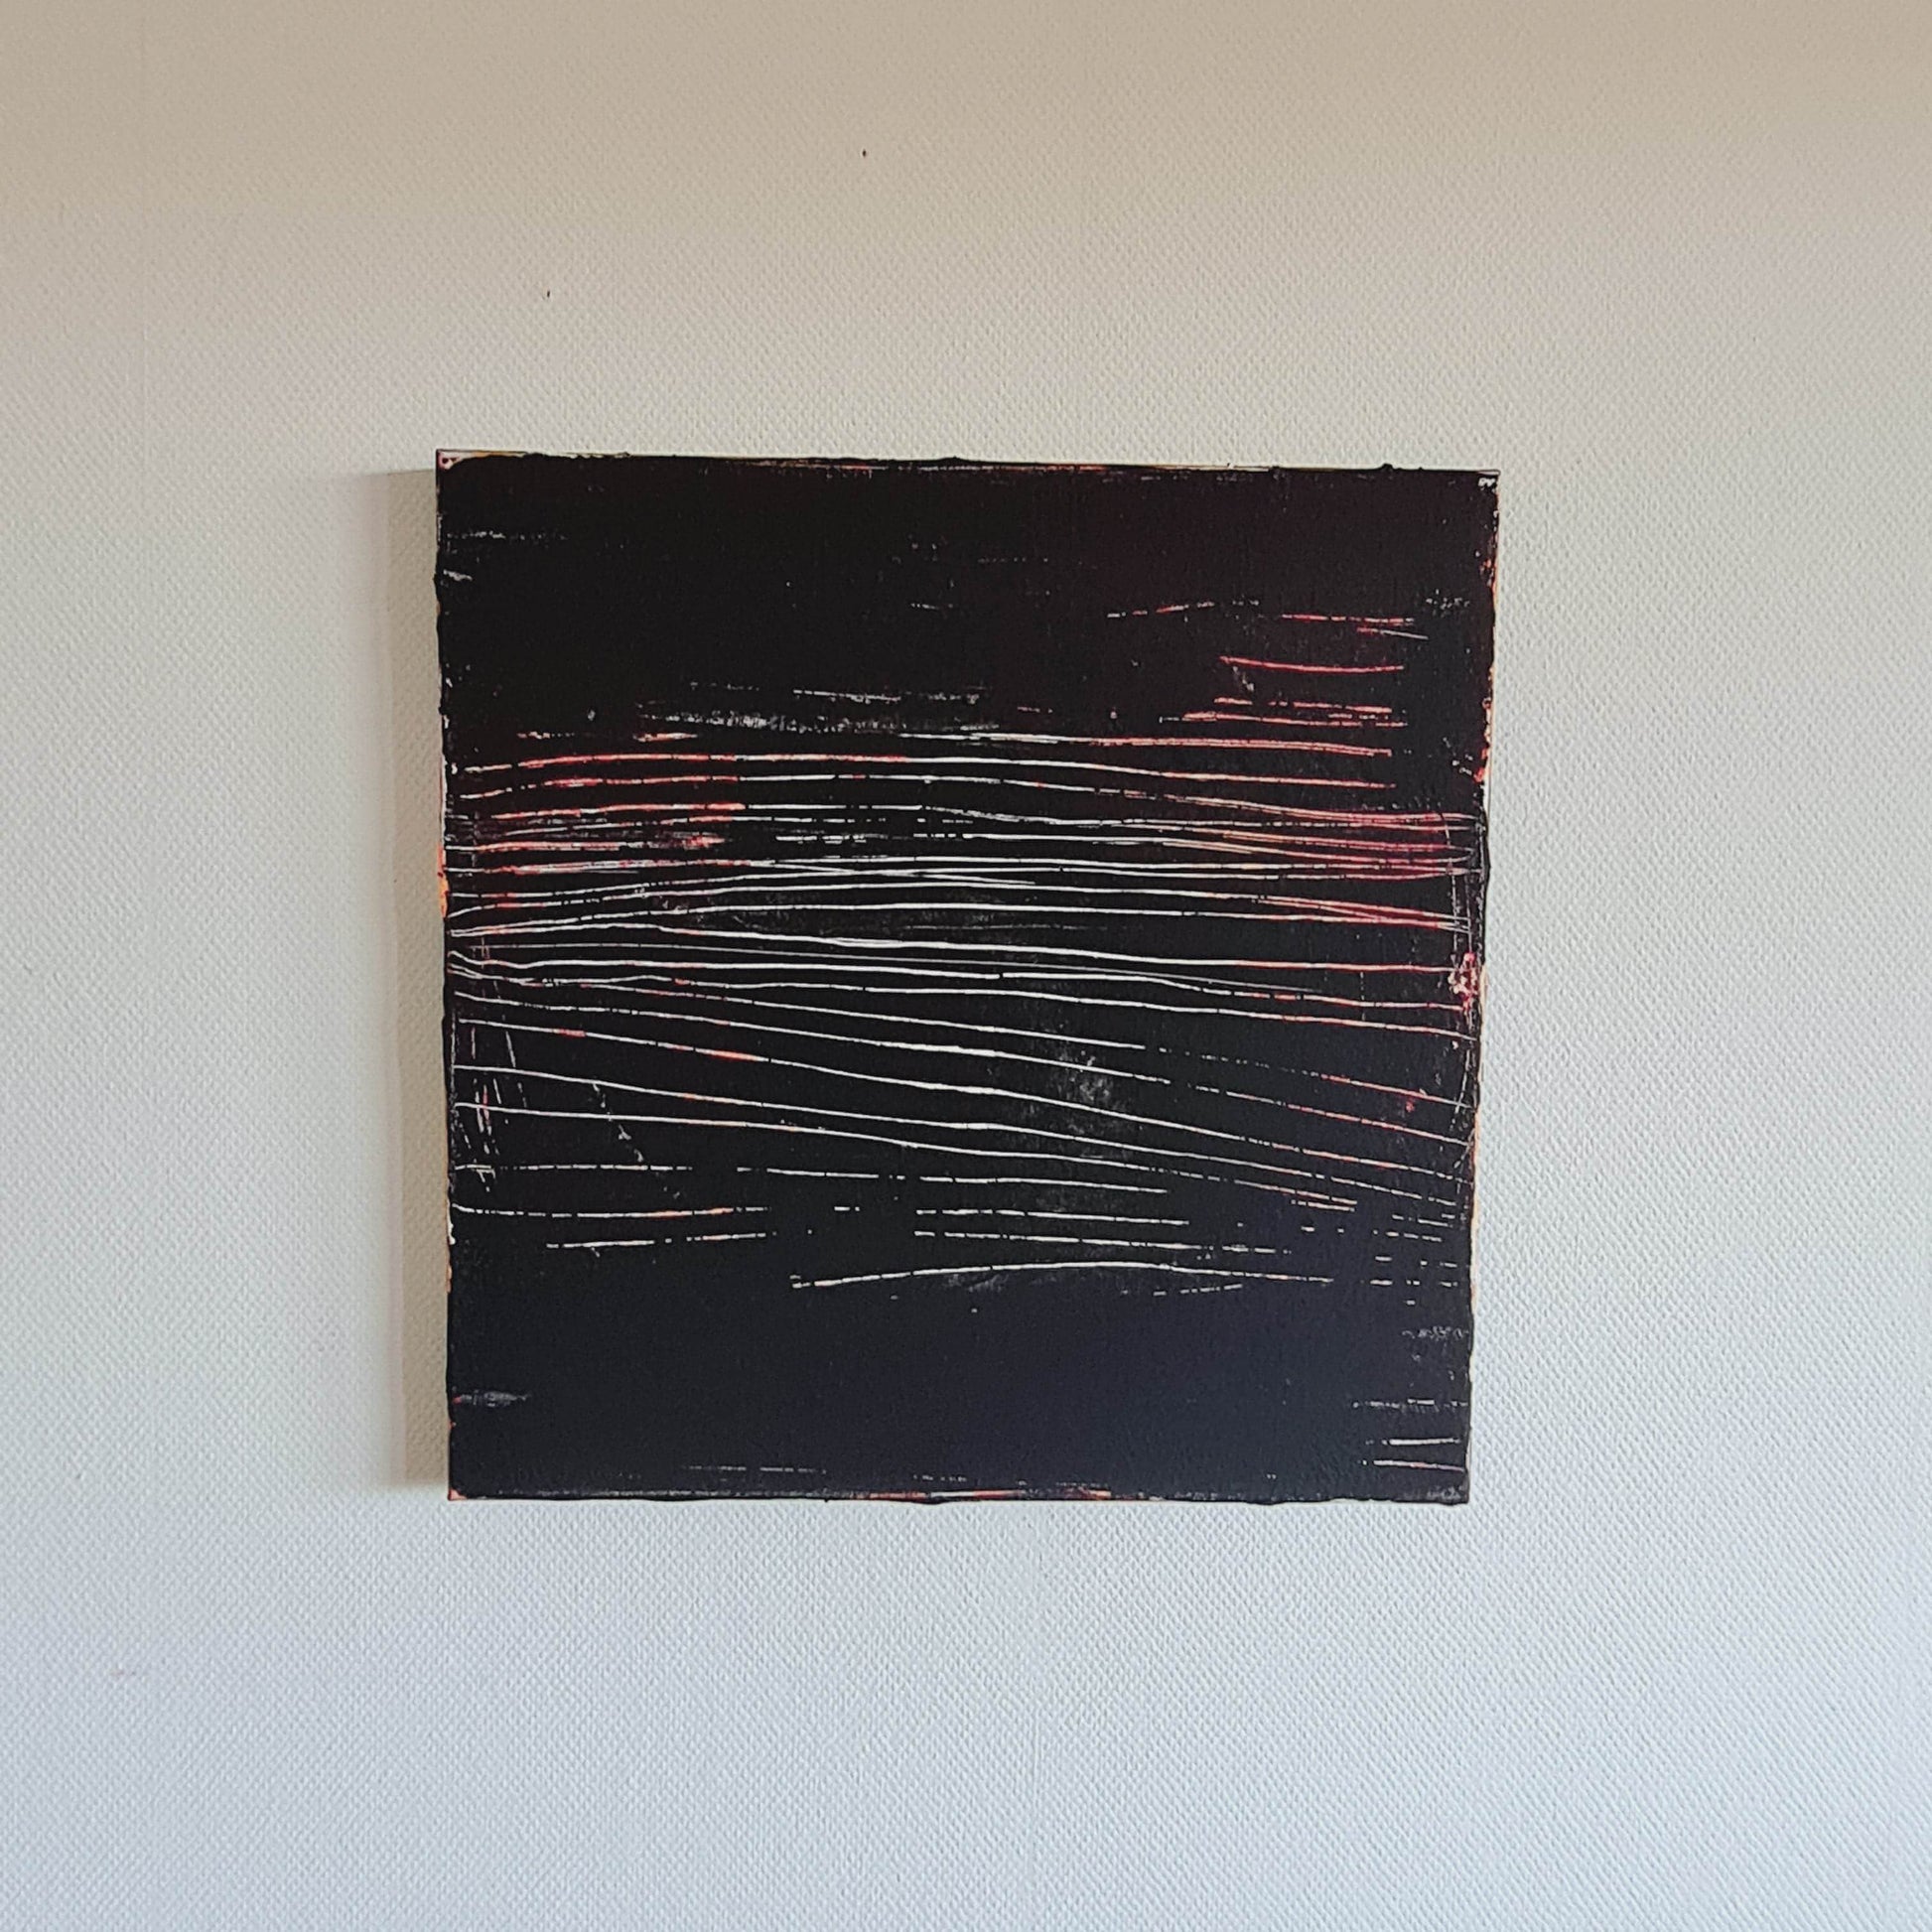  vorhandenes Unikat: Immer dem Weg entlang / 60 x 60 cm / schwarzweiss  abstrakte acrylbilder auf leinwand